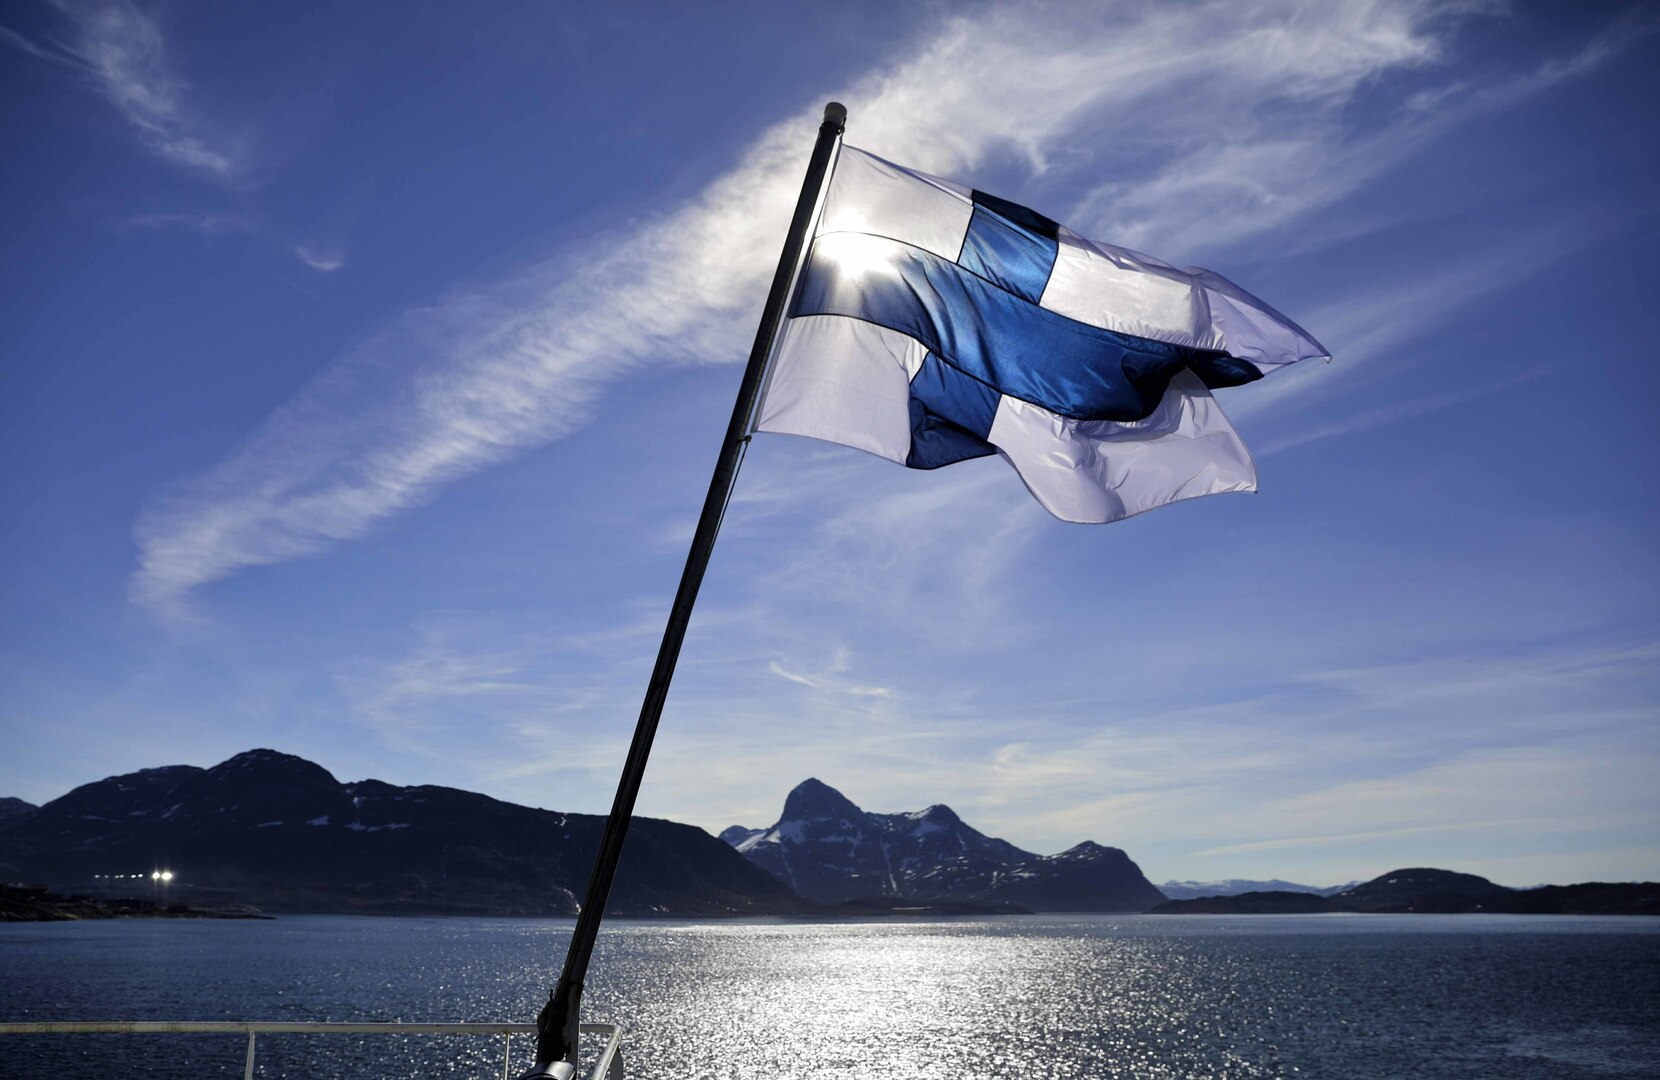 قيادة فنلندا تقرر رسميا تقديم طلب للانضمام إلى الناتو